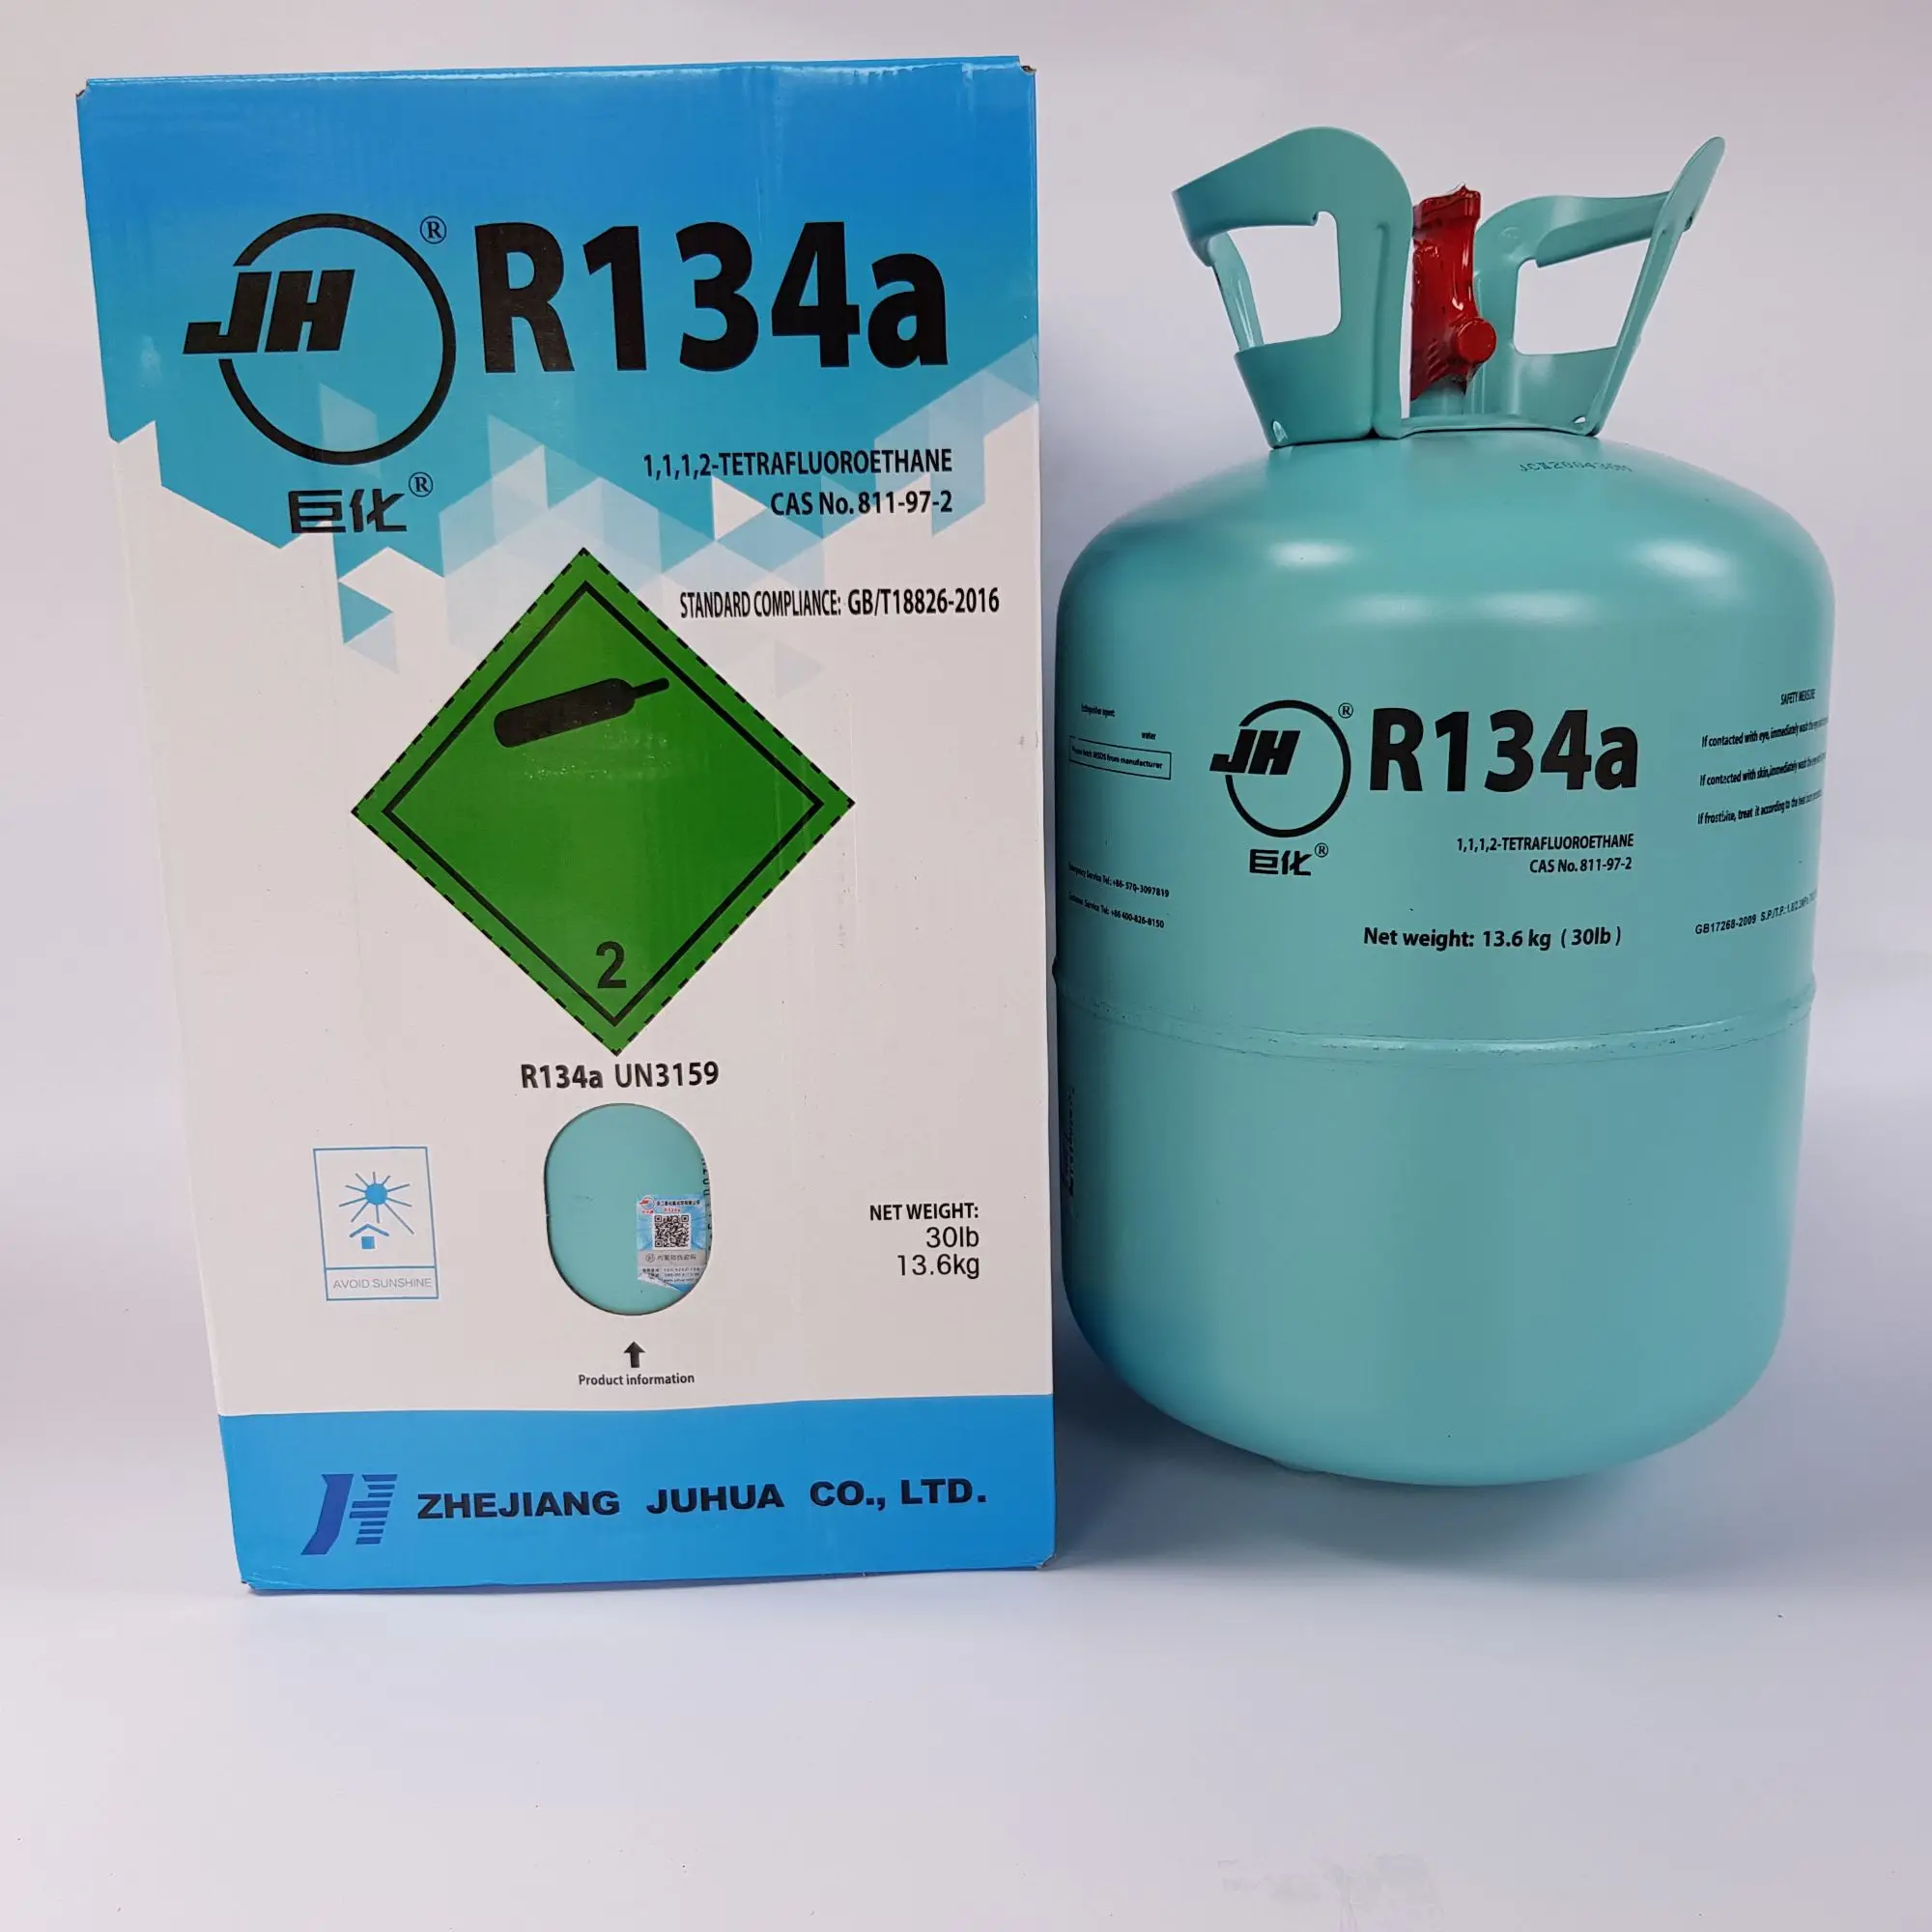 น้ำยาแอร์/สารทำความเย็น R-134a ยี่ห้อ JH ขนาดน้ำยา 13.6kg.#ของแท้นำเข้าจากประเทศจีน